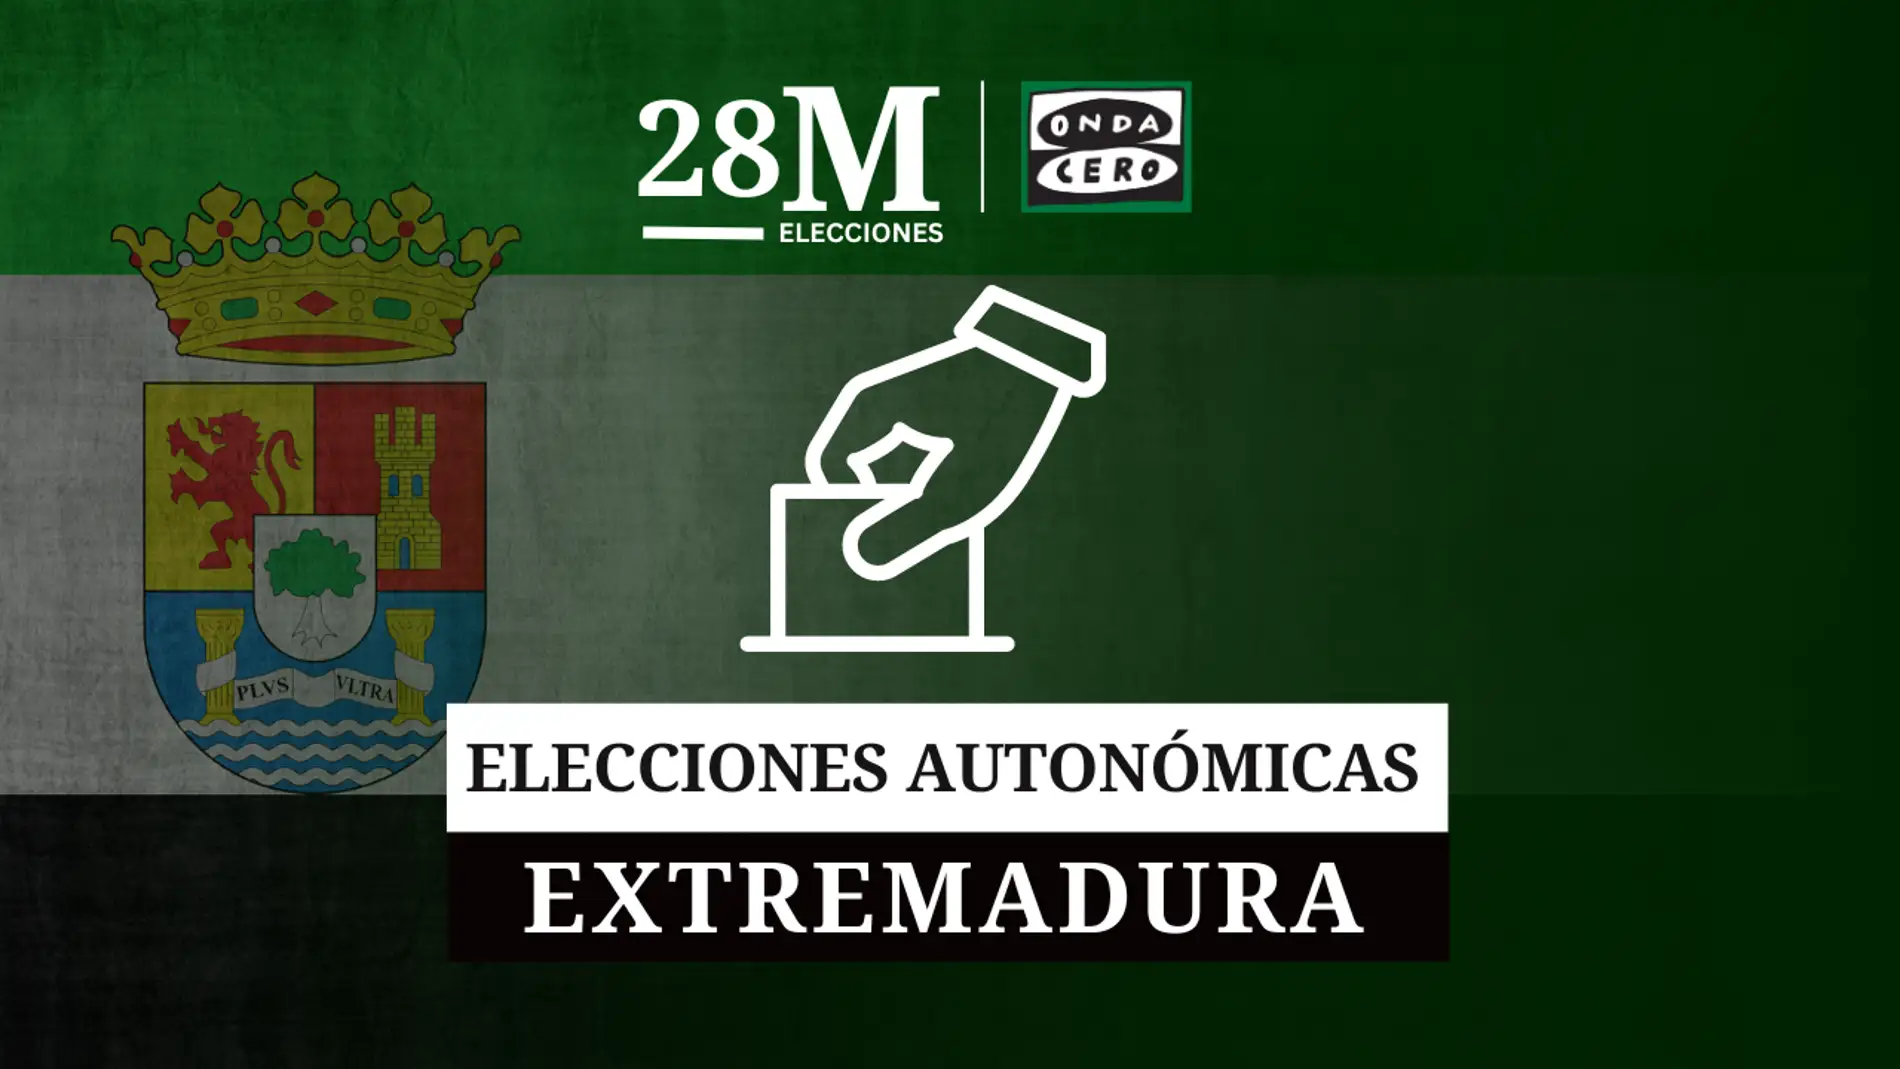 La Junta de Extremadura resalta el inicio "ejemplar" de la jornada electoral con la constitución del 100% de mesas sin incidentes